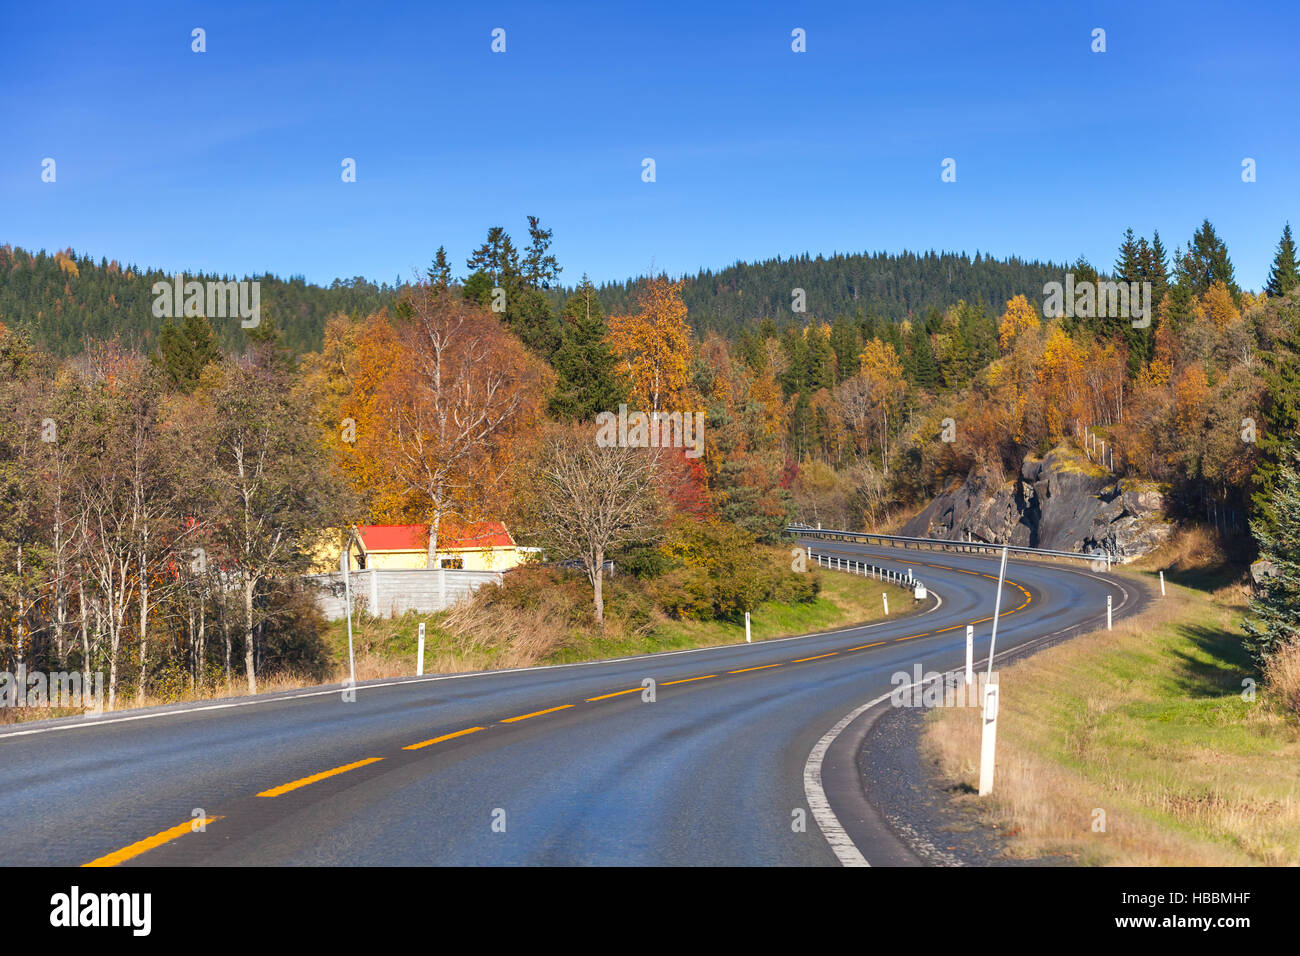 Drehen des ländlichen Raums Autobahn in Herbstsaison, norwegische Landschaft Stockfoto